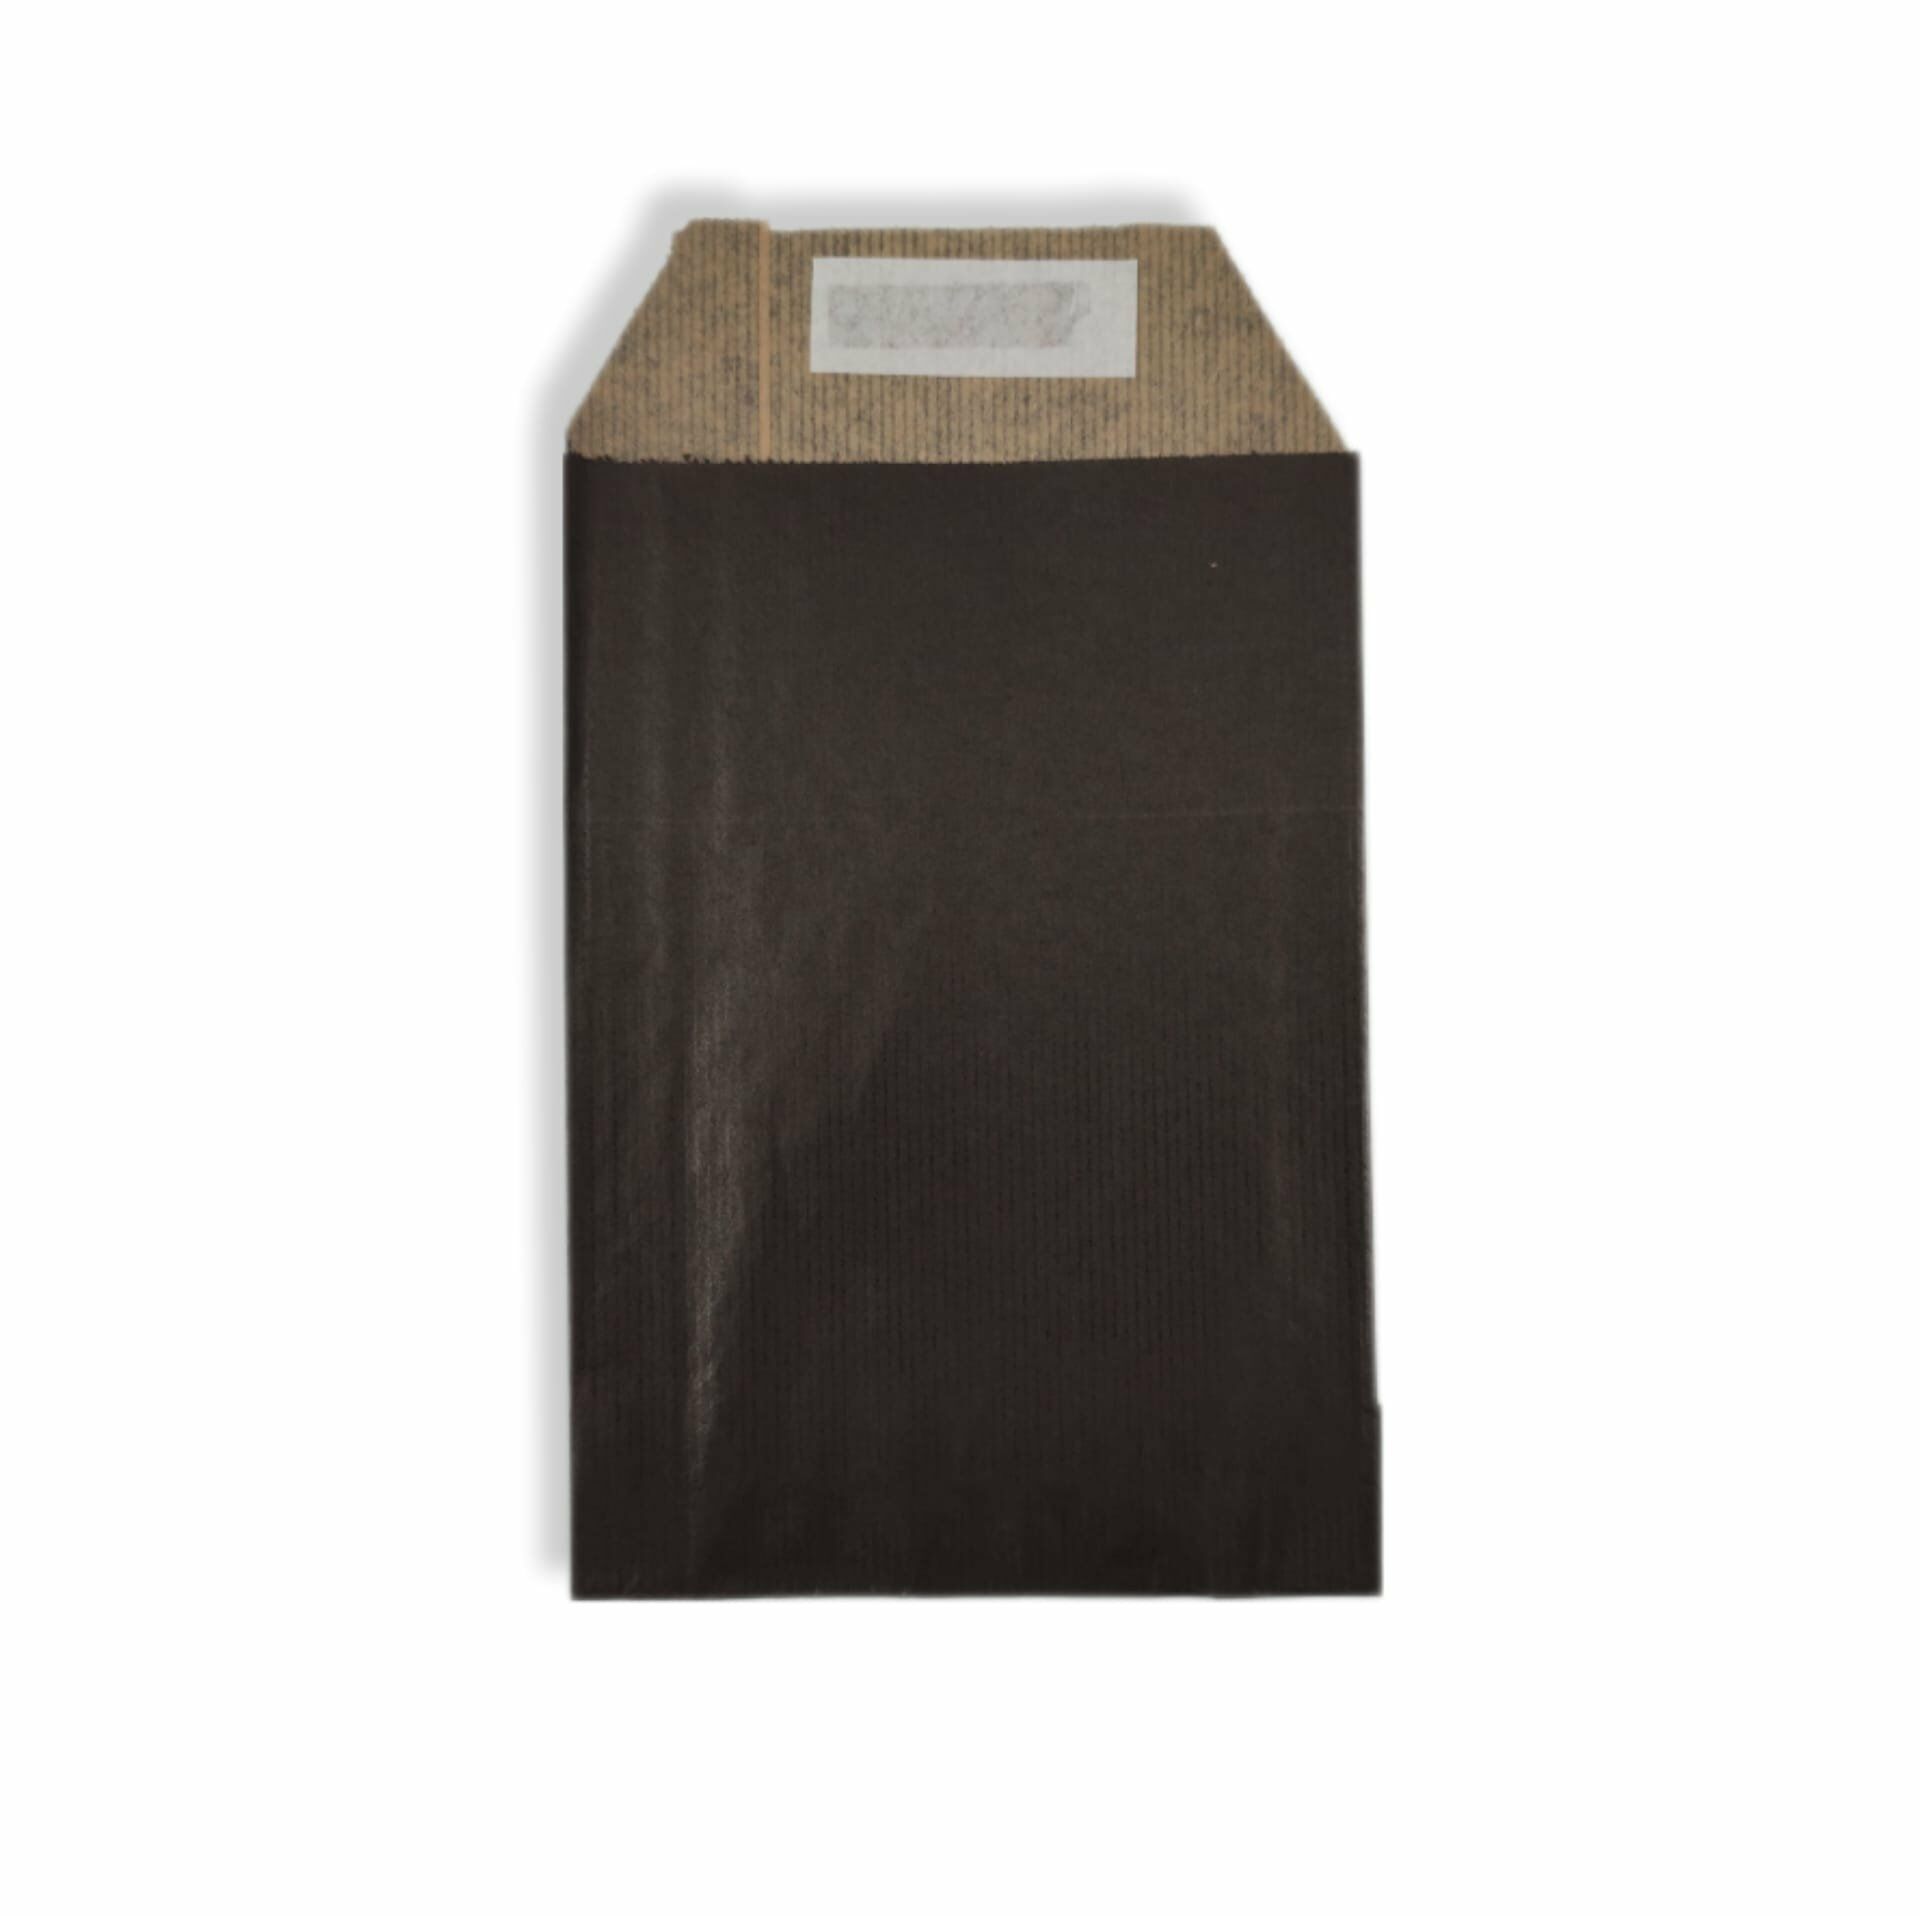 Roco Paper Hediye Paketi 25*6*30 cm Dipsiz Kese Kağıdı Yapışkanlı Ağız Siyah 25'li Paket